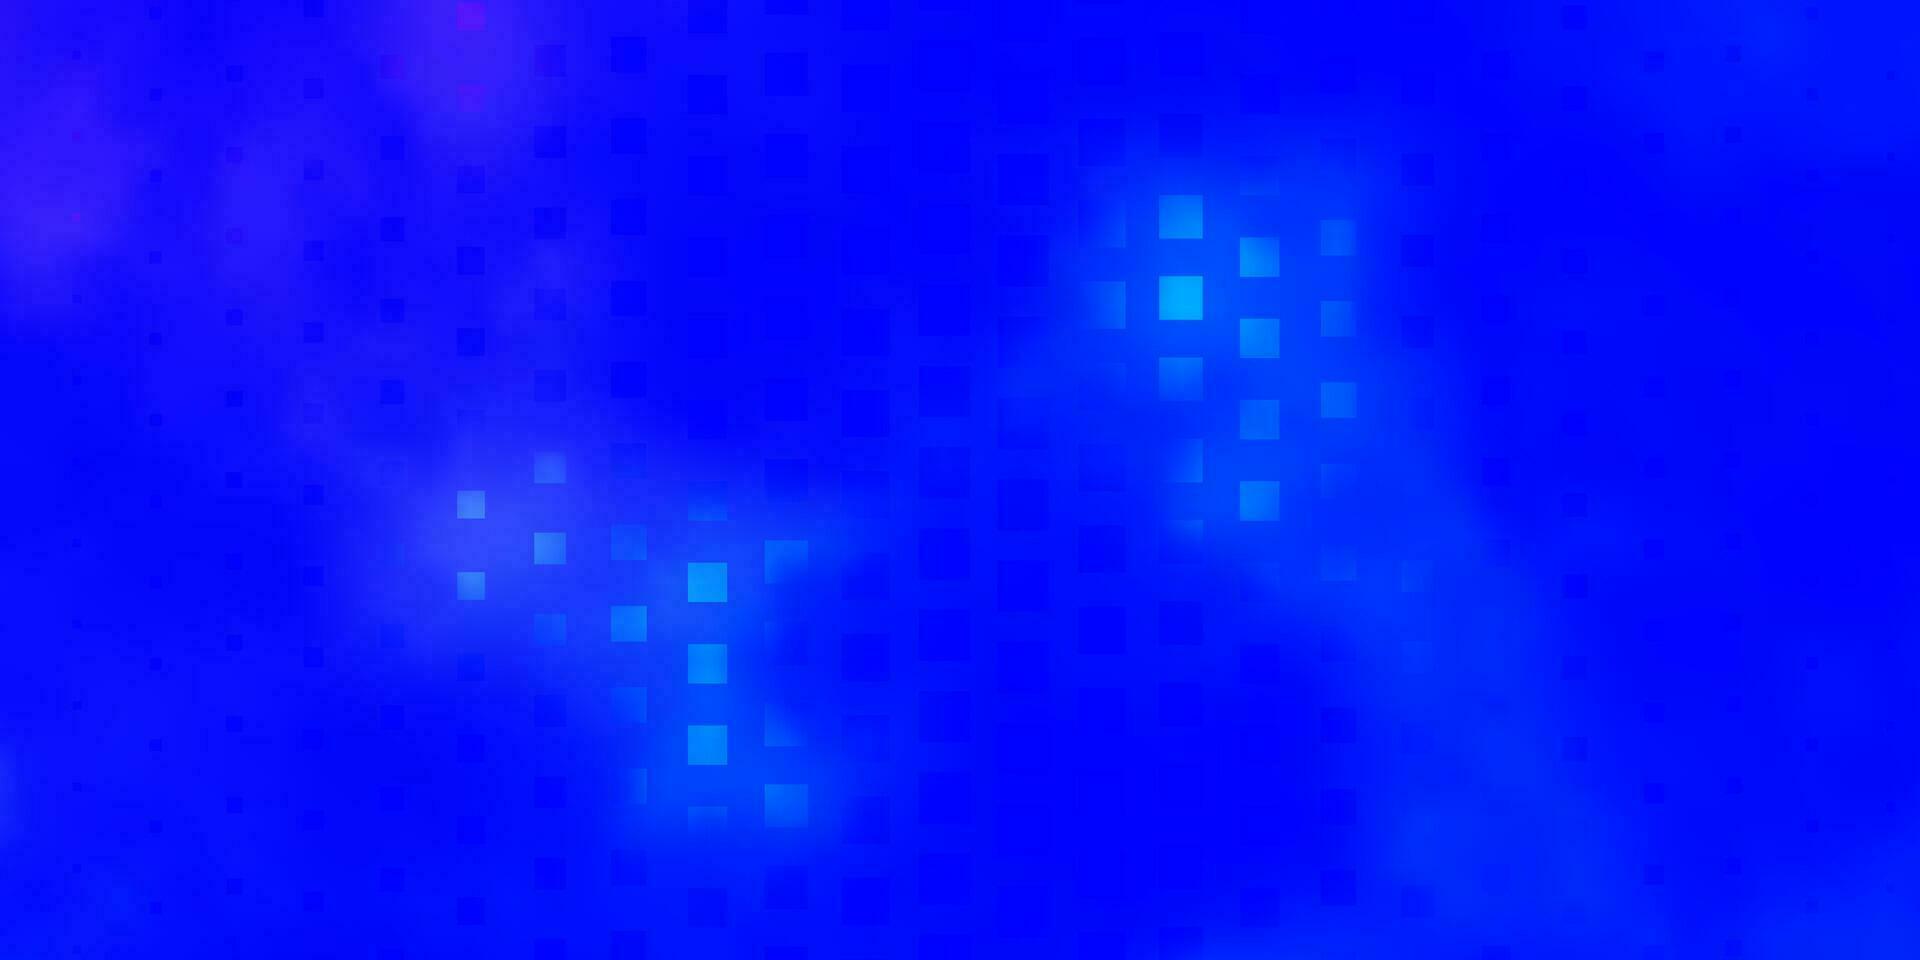 toile de fond de vecteur rose clair, bleu avec des rectangles.